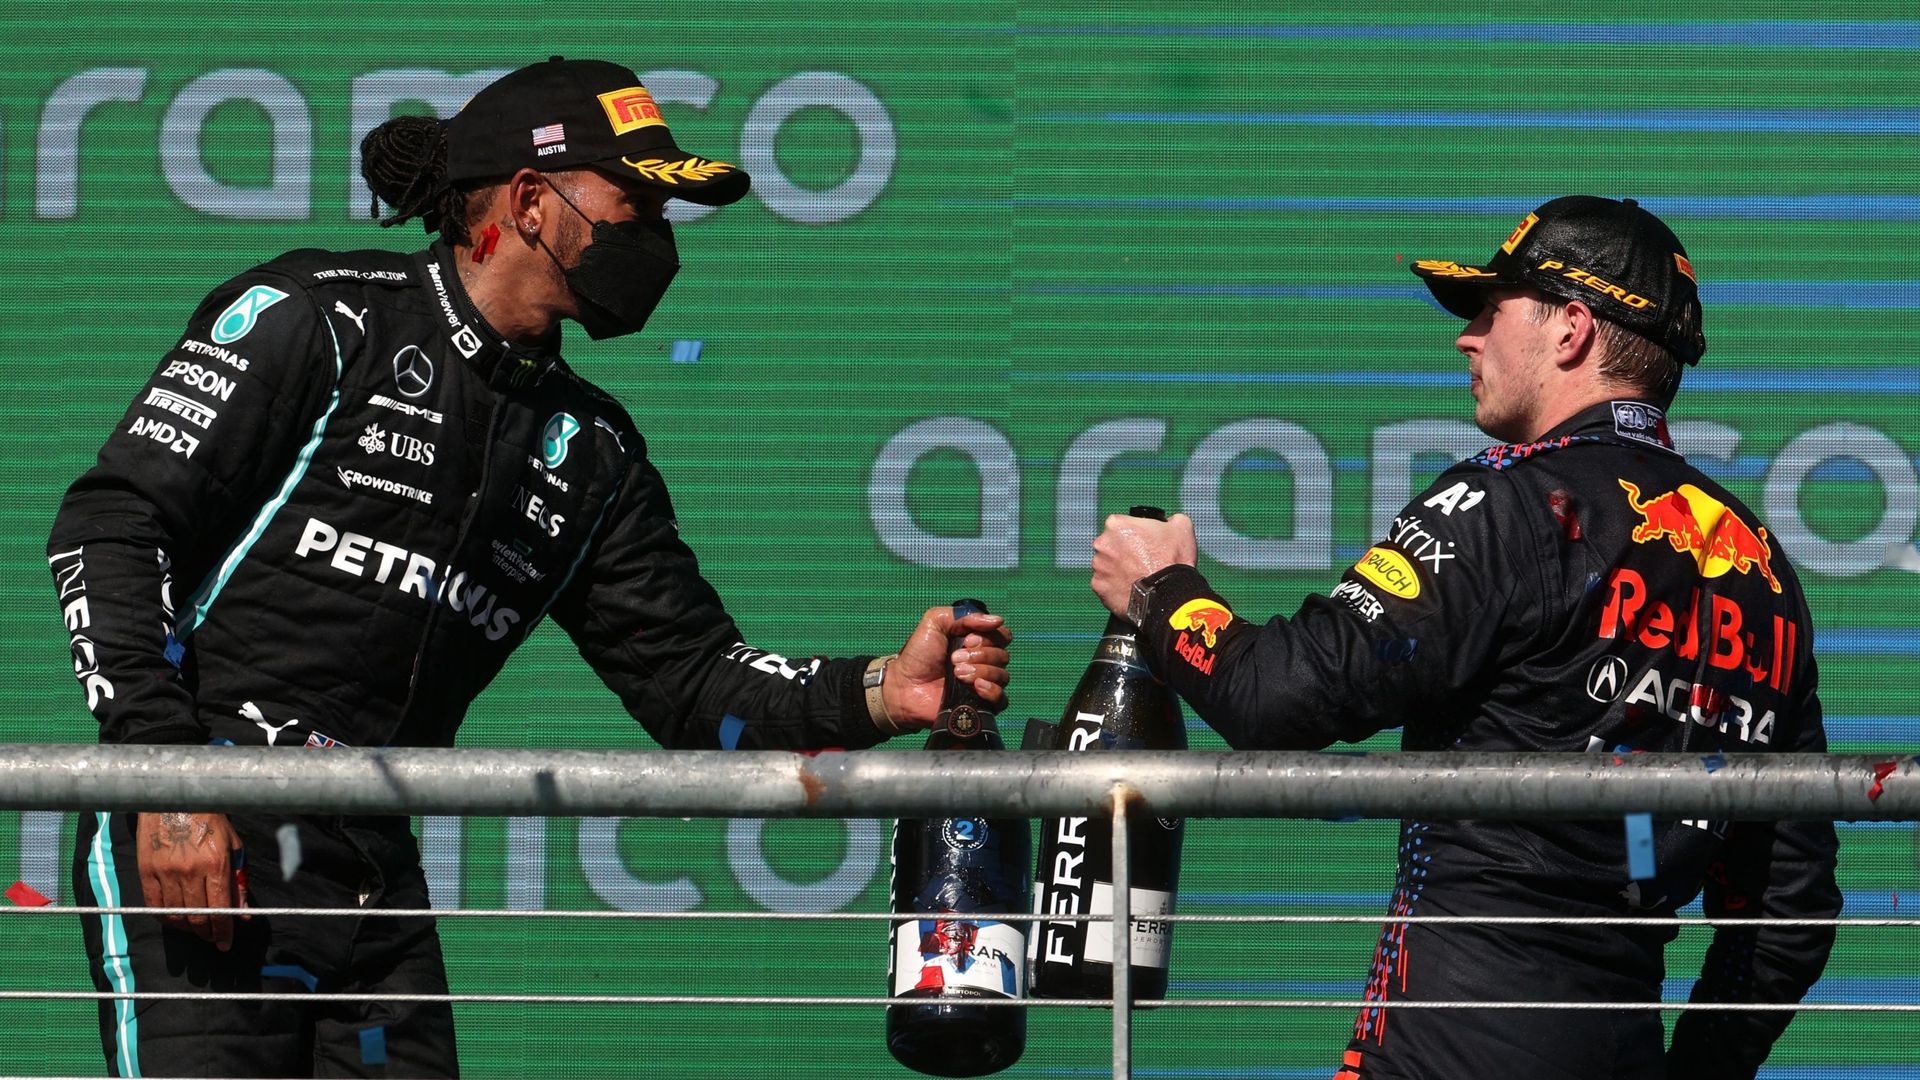 Qui de Lewis Hamilton ou Max Verstappen va remporte le titre mondial cette année ?